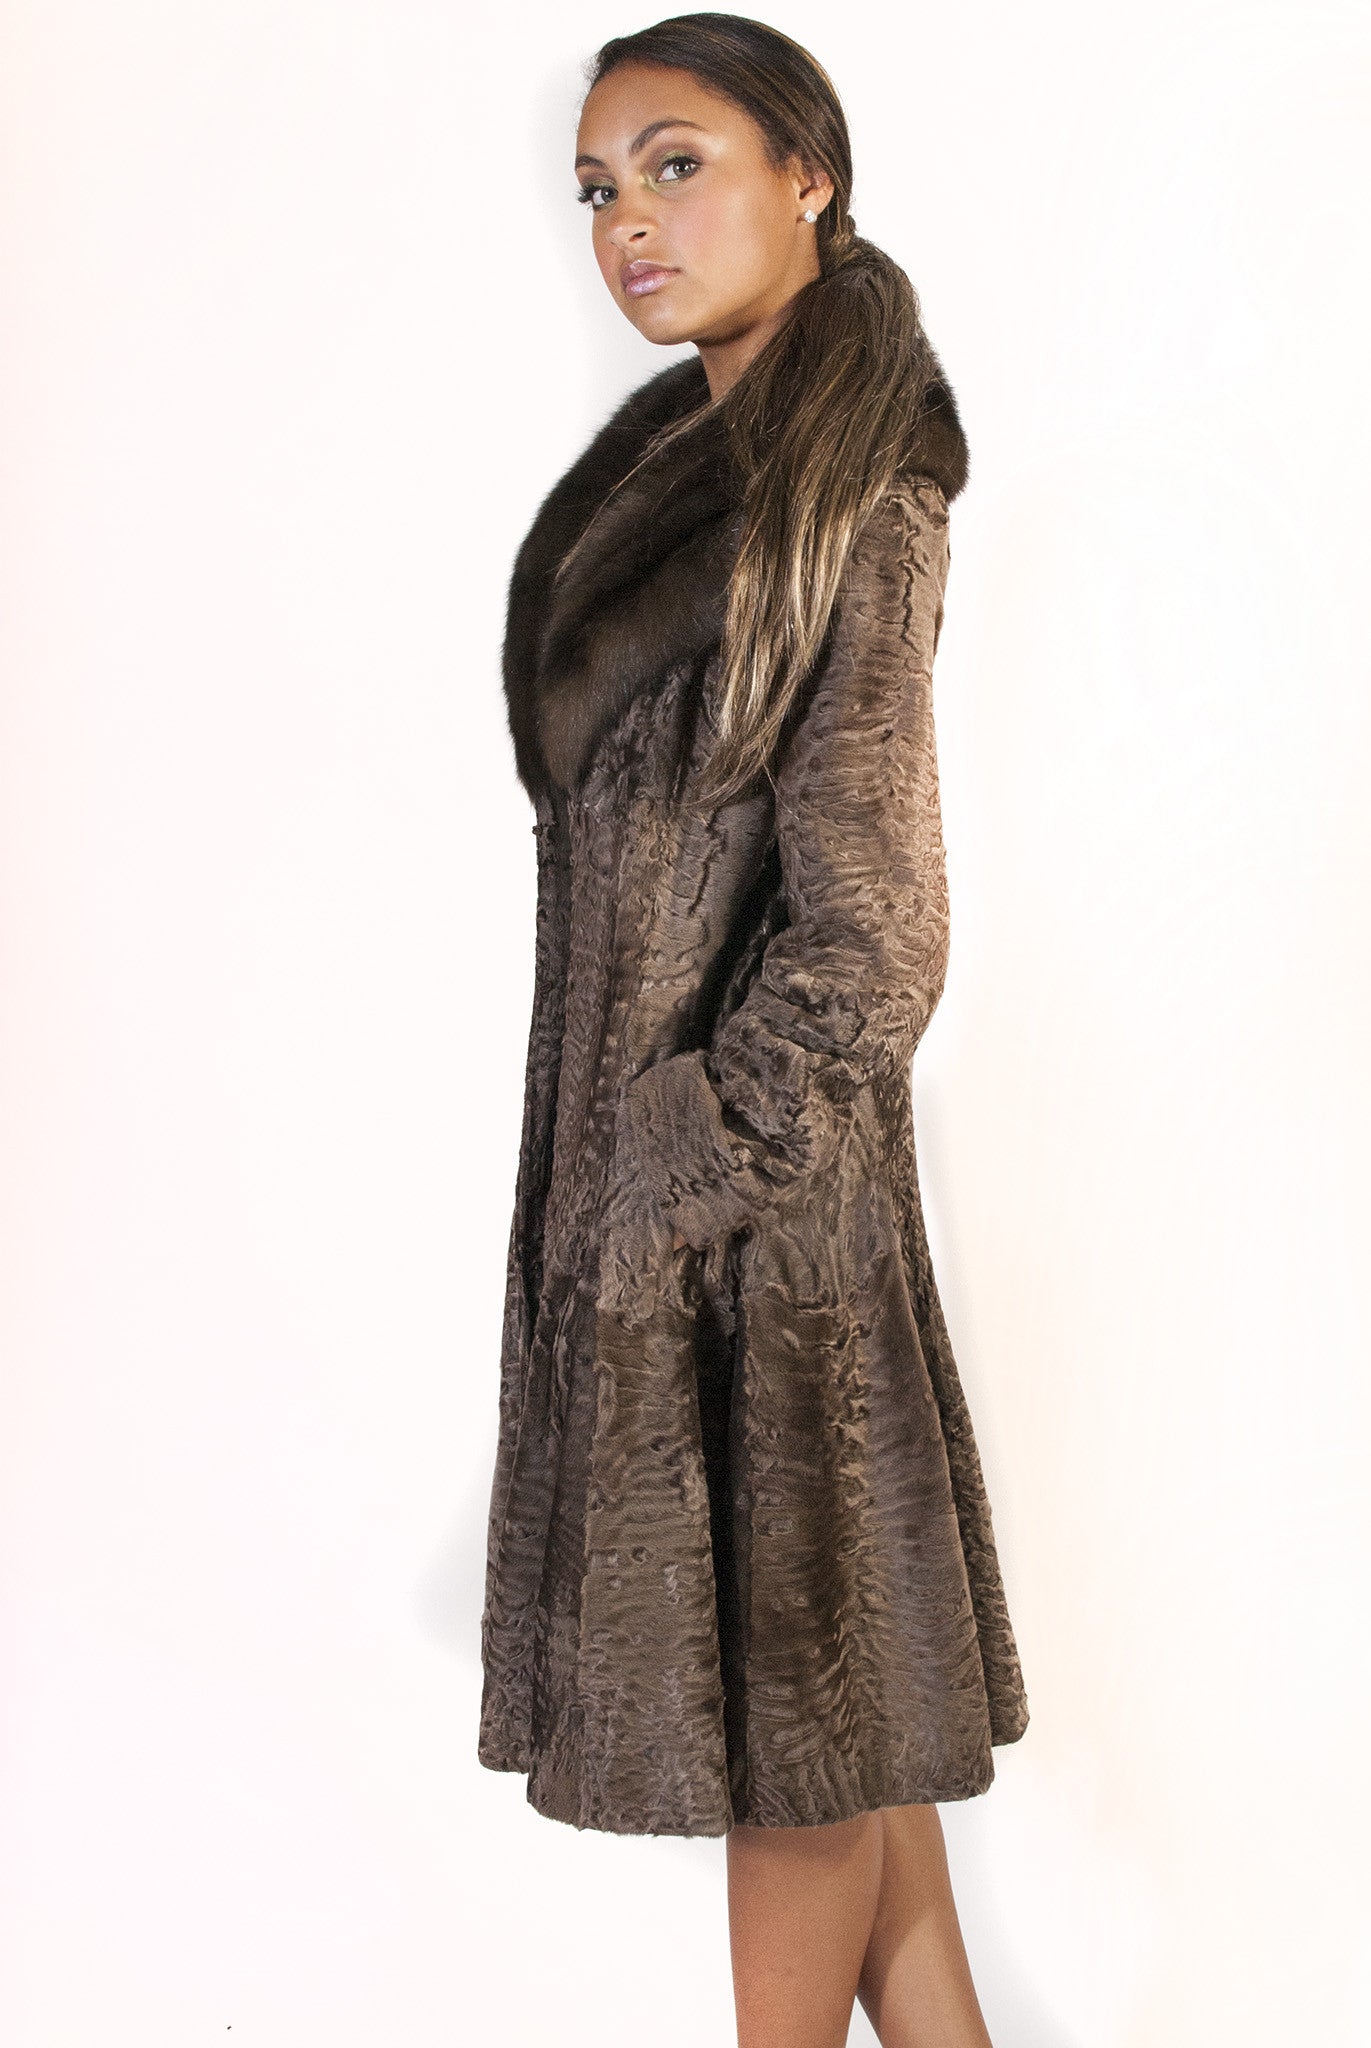 Medium Brown Swakara Jacket with Sable Collar - alexandros-furs